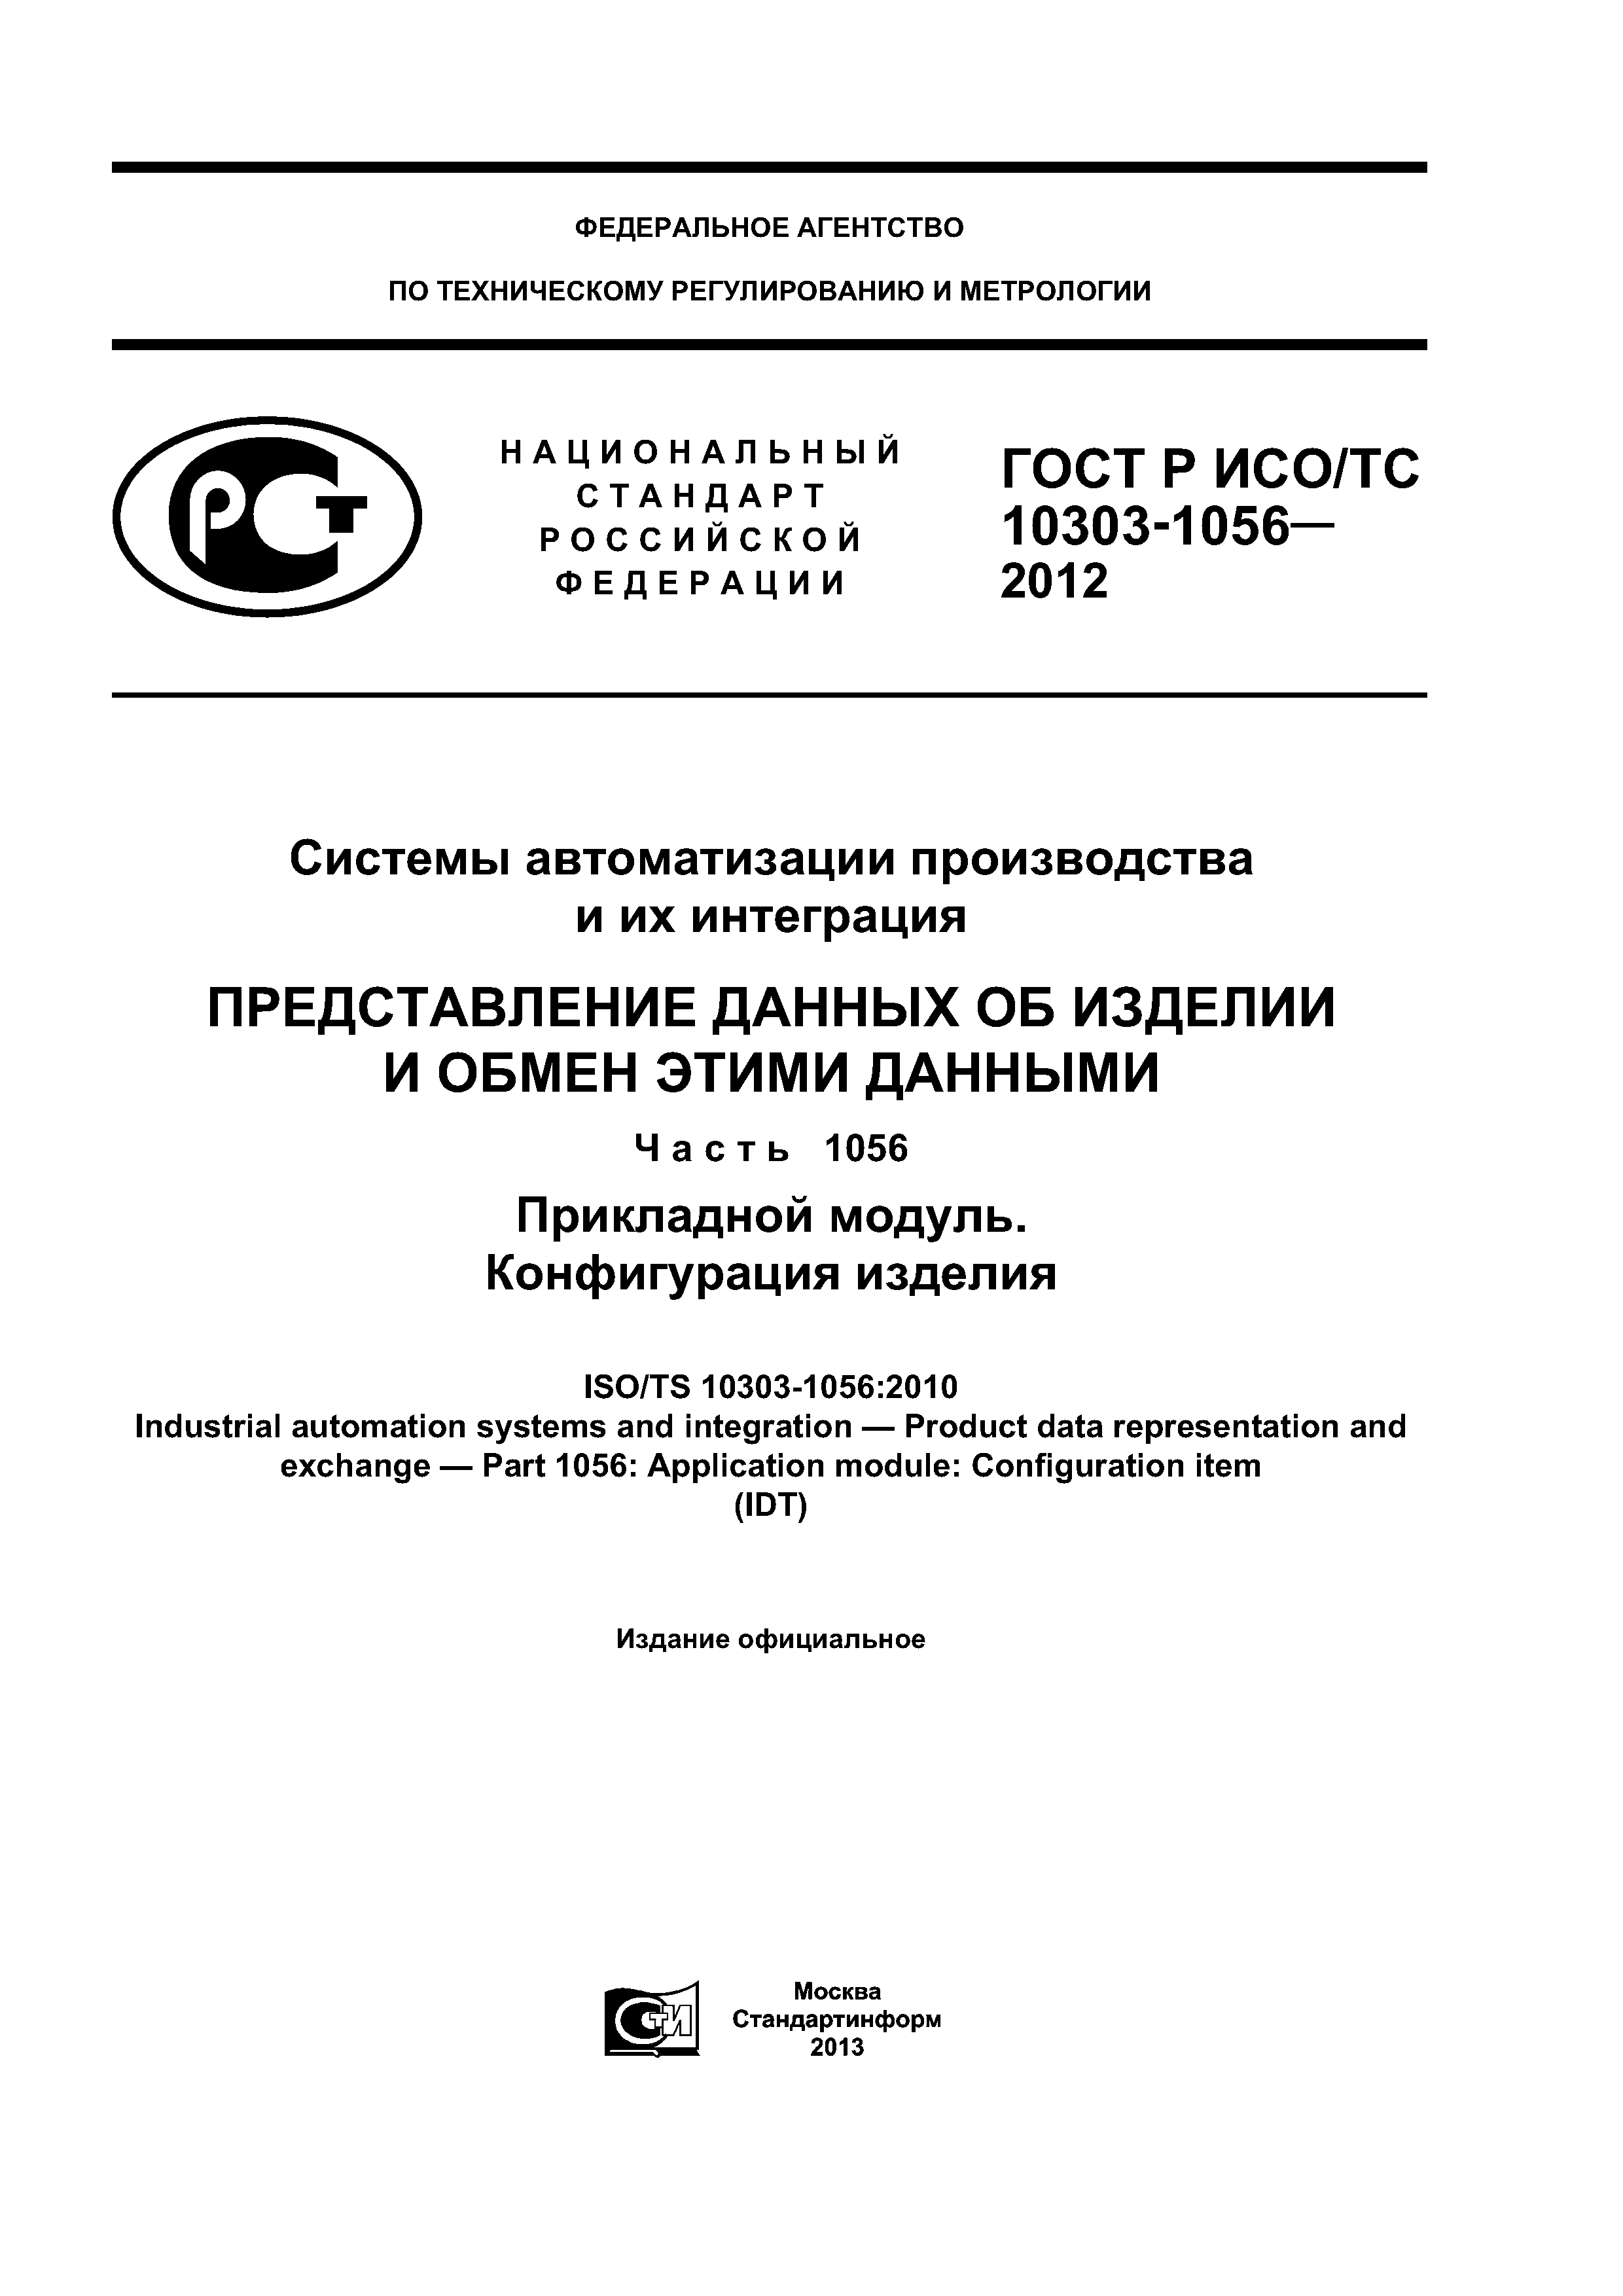 ГОСТ Р ИСО/ТС 10303-1056-2012